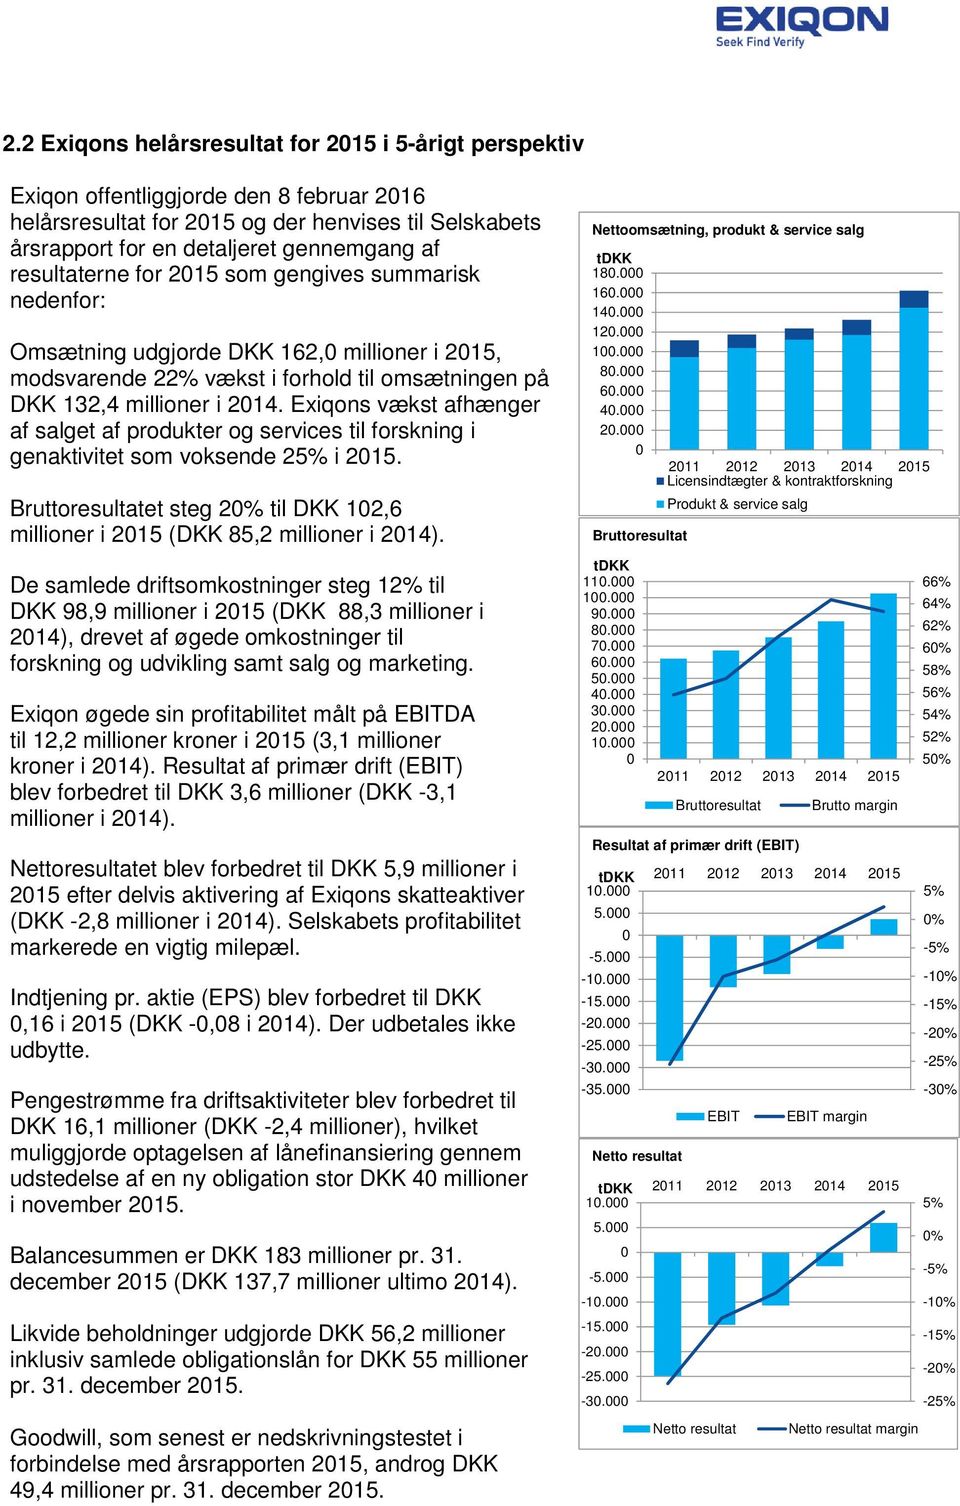 Exiqons vækst afhænger af salget af produkter og services til forskning i genaktivitet som voksende 25% i 2015. Bruttoresultatet steg 20% til DKK 102,6 millioner i 2015 (DKK 85,2 millioner i 2014).